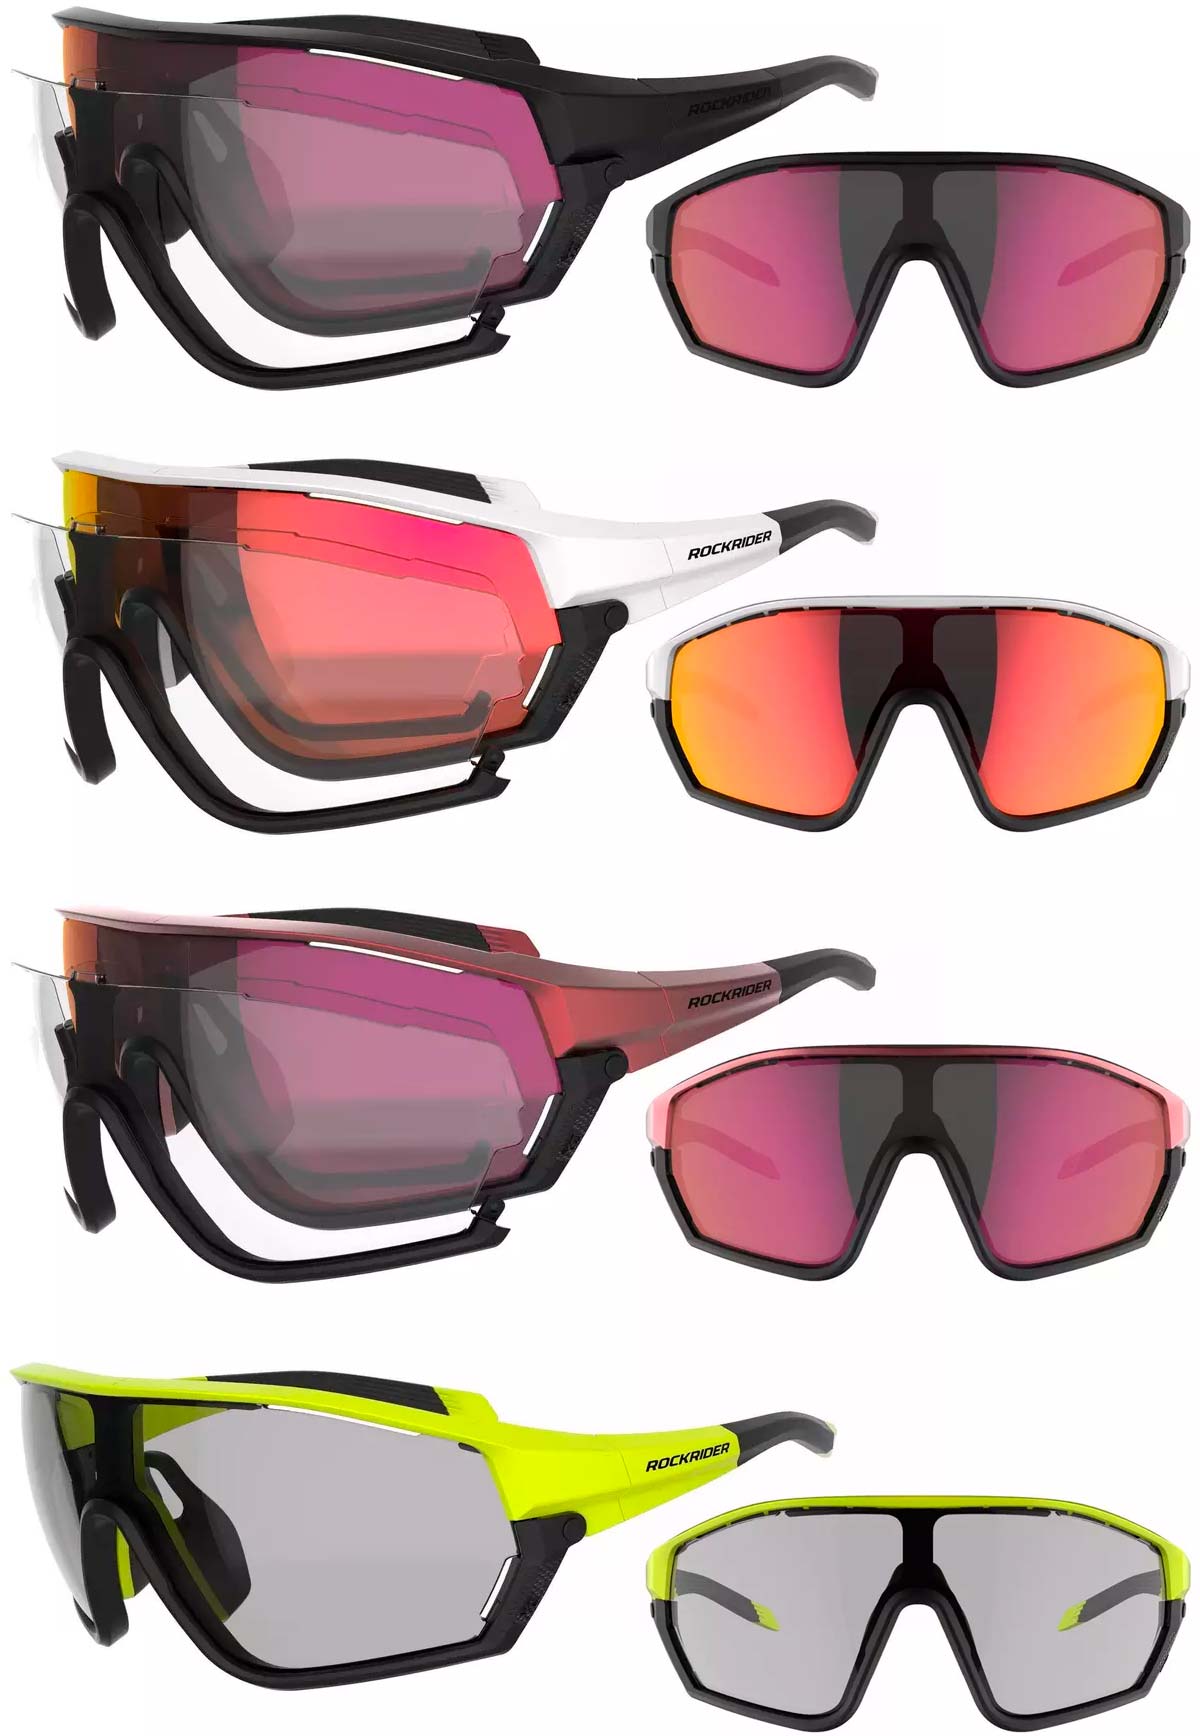 En TodoMountainBike: Ligeras, económicas y con lentes para todos los gustos: llegan las gafas RockRider XC Race